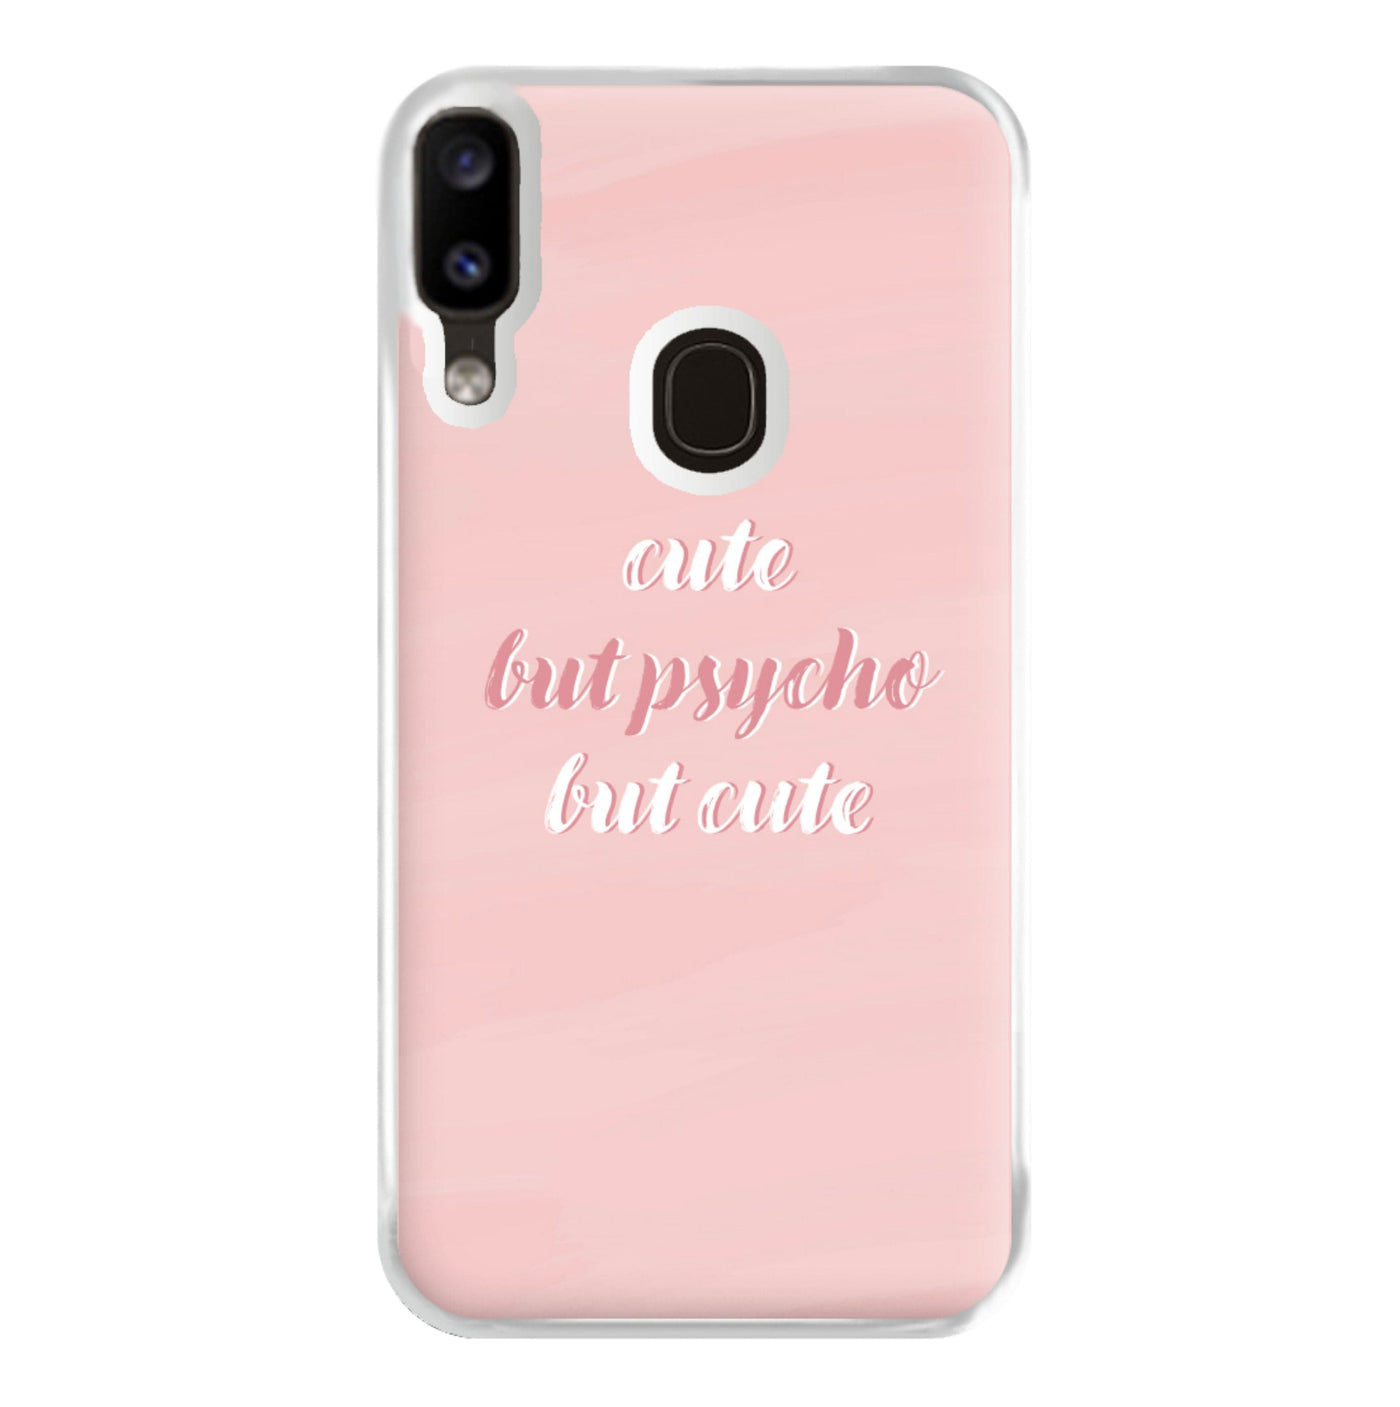 Cute But Psycho But Cute Phone Case